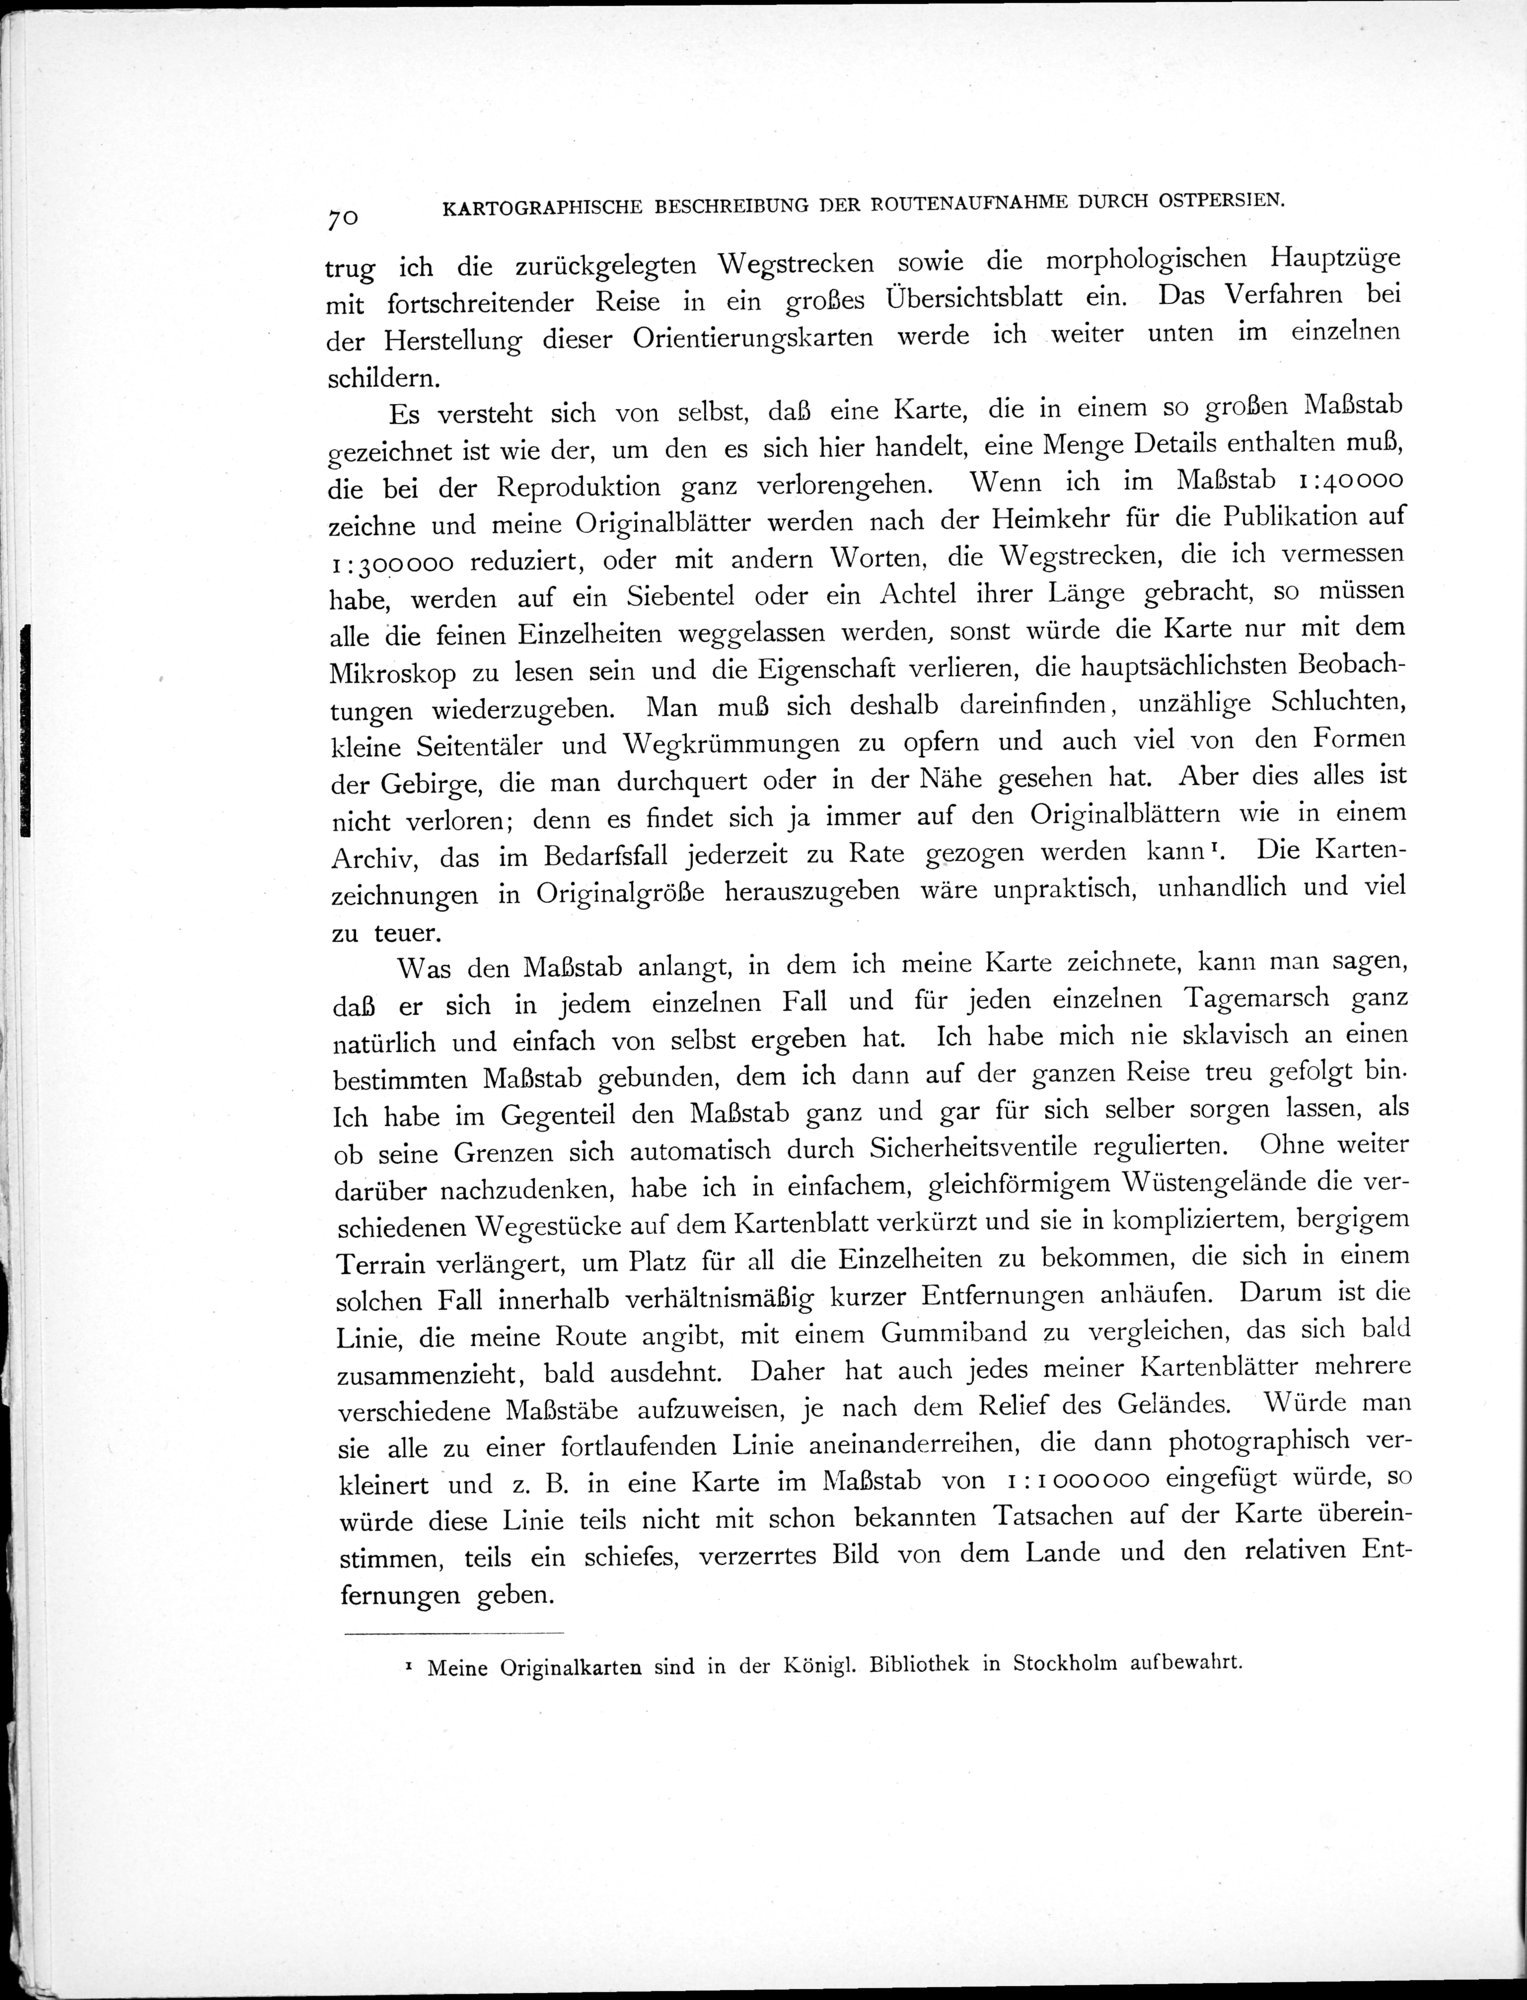 Eine Routenaufnahme durch Ostpersien : vol.2 / Page 122 (Grayscale High Resolution Image)